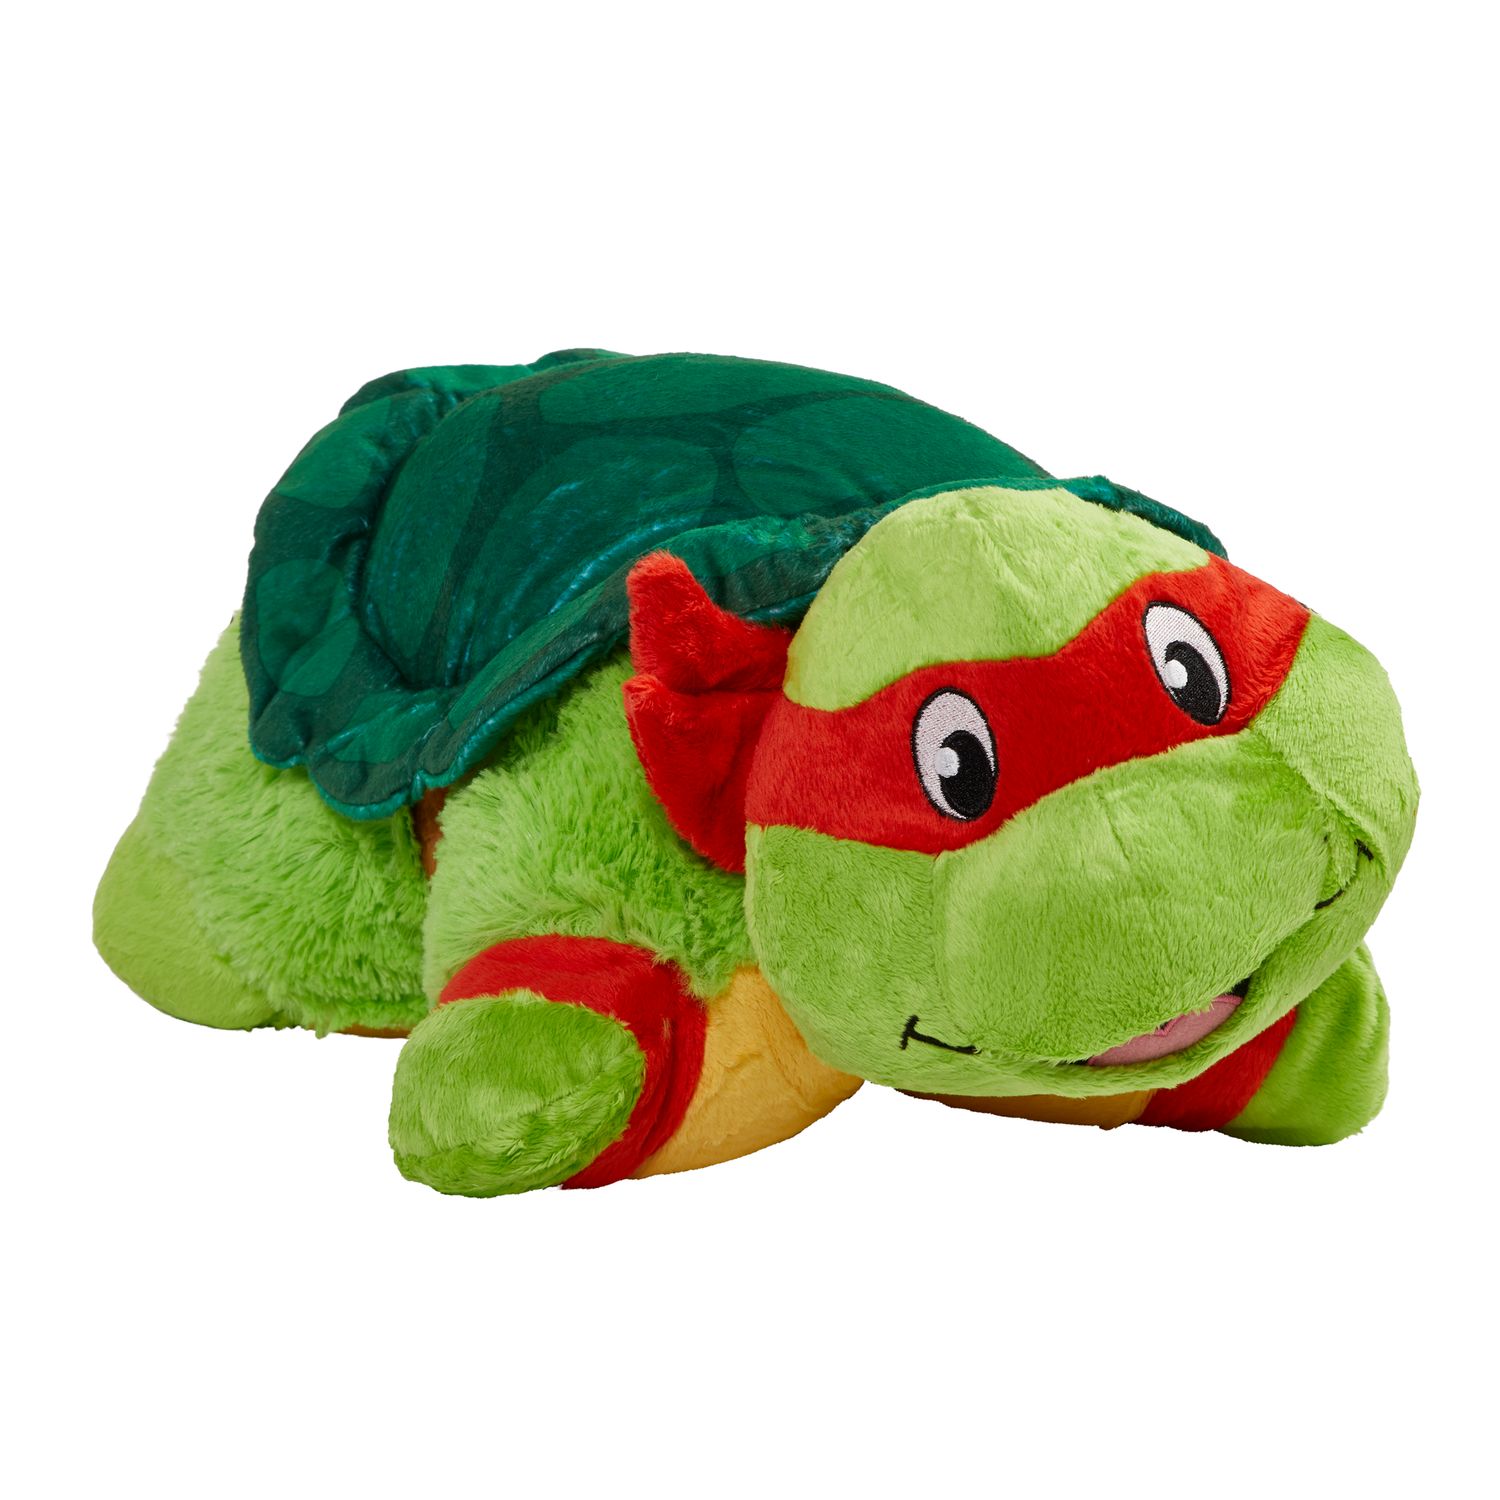 ninja turtle stuffed animal